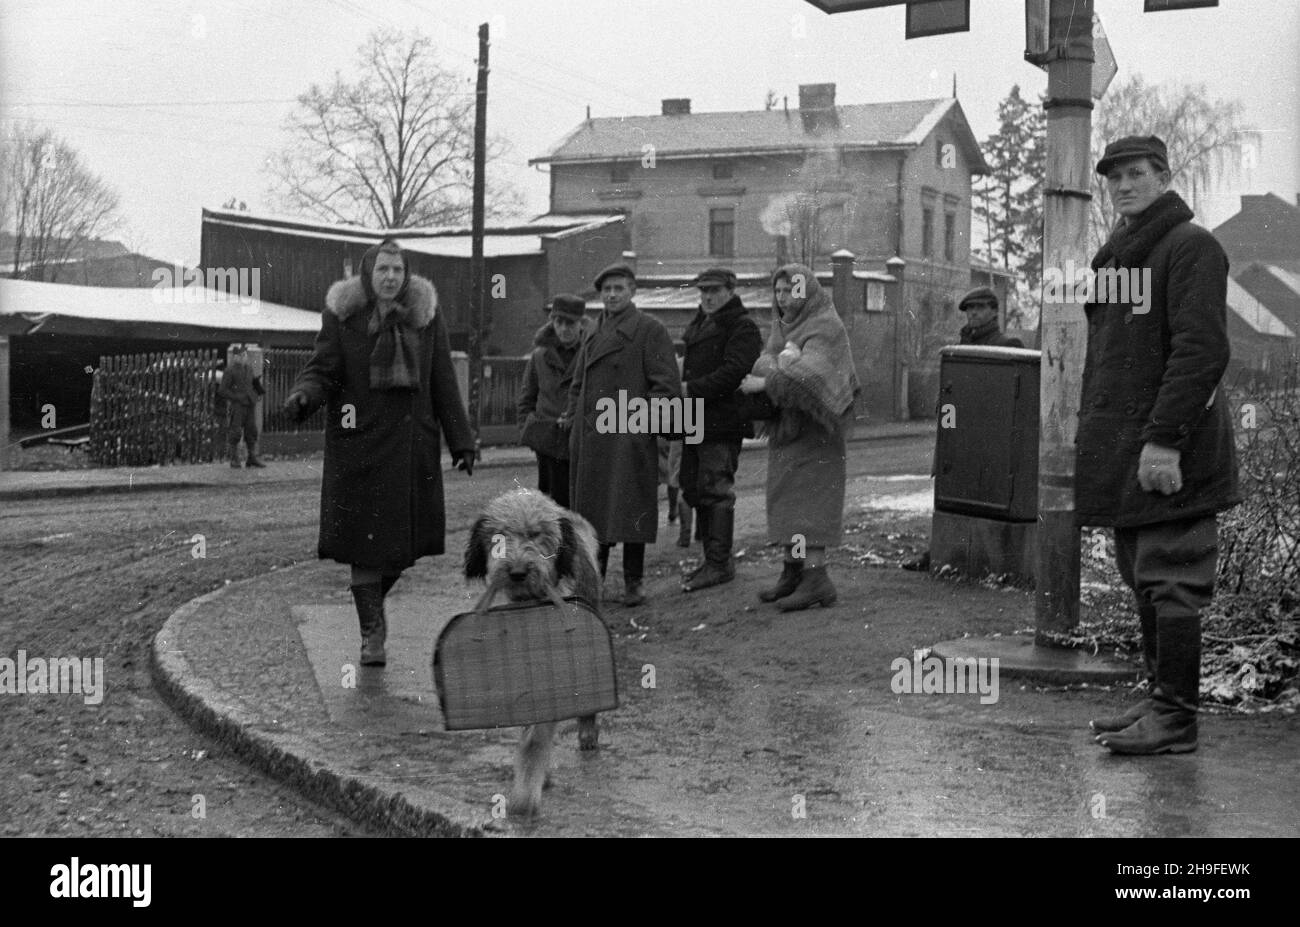 Mor¹g, 1948-02.Po/gr PAP Dok³adny dzieñ wydarzenia nieustalony.Morag, le 1948 février.Une femme marchant avec un chien. po/gr PAP Banque D'Images